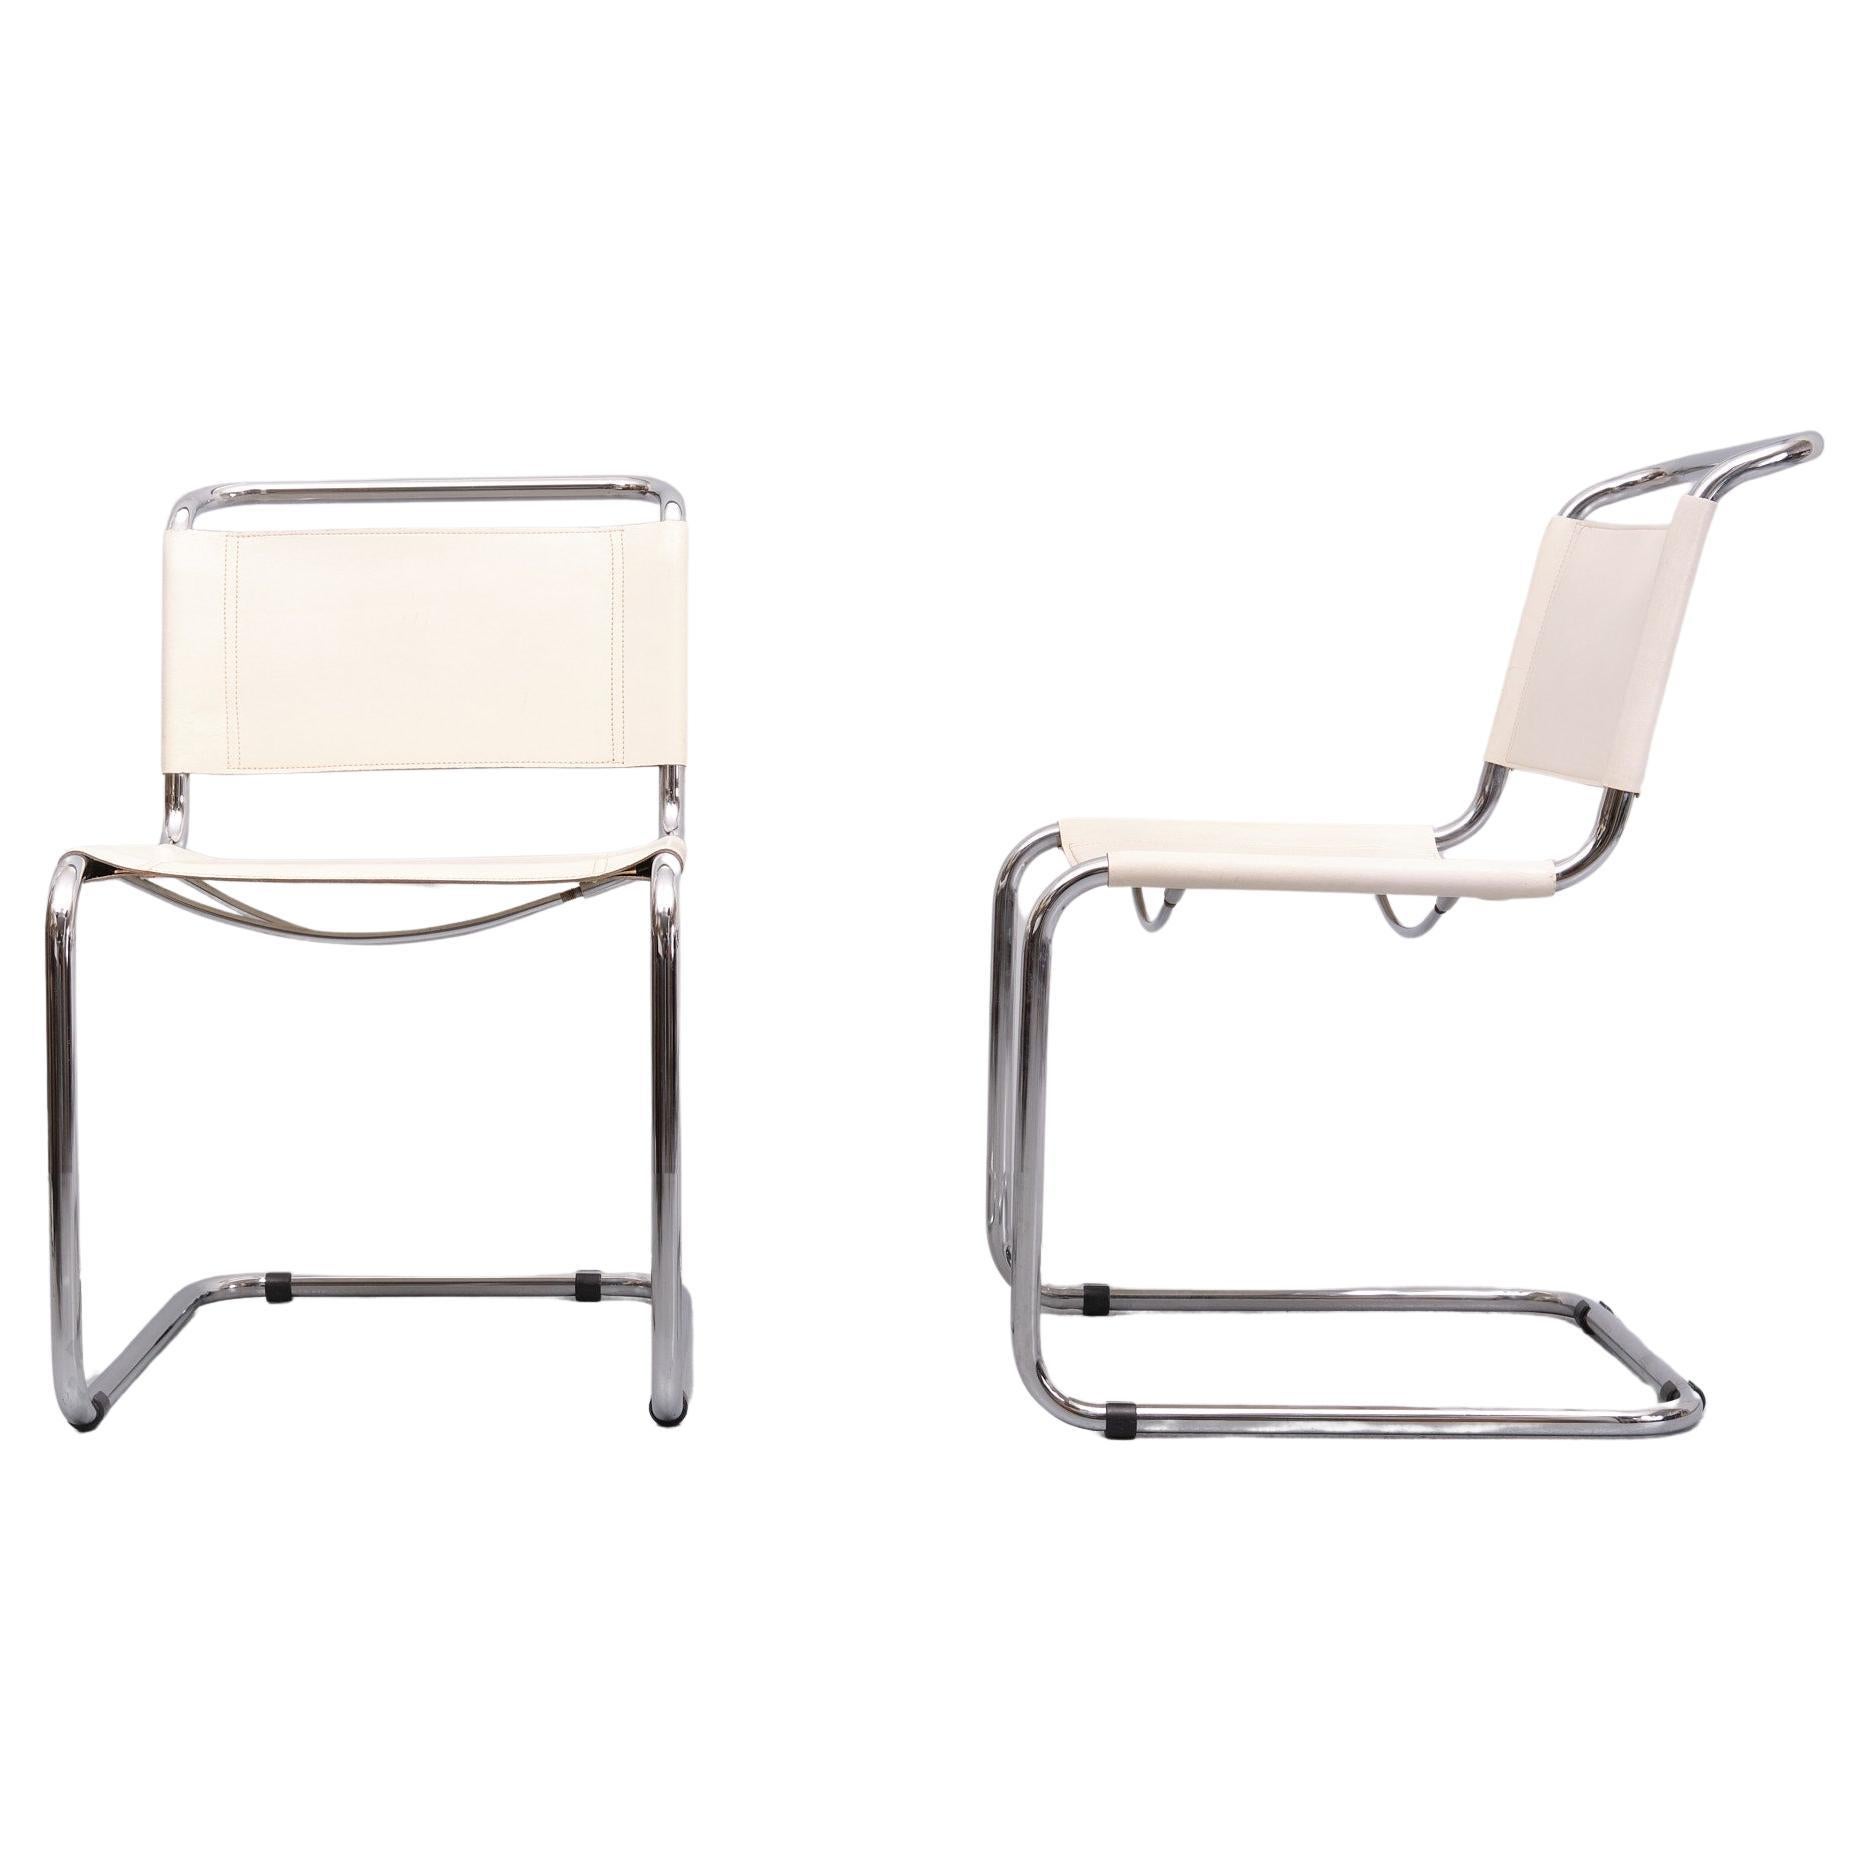 Deux chaises luge originales en cuir blanc . Cadre tubulaire chromé.  1970s 
L'architecte-designer moderniste néerlandais Mart Stam (1899-1966) était un célèbre partisan de la Nouvelle Objectivité, un mouvement culturel allemand prônant un retour à